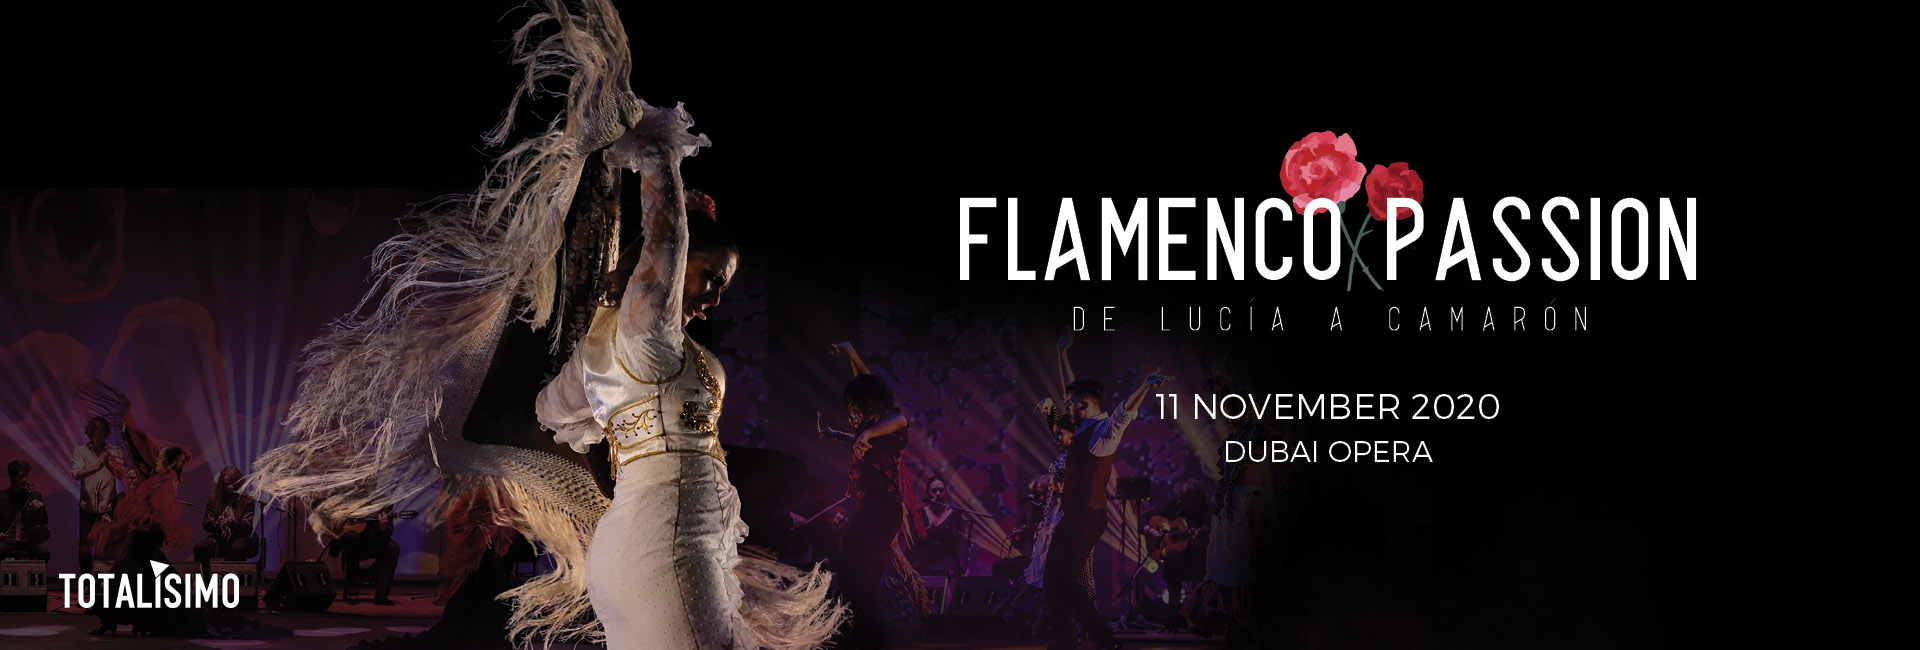 Flamenco Passion at Dubai Opera 2020